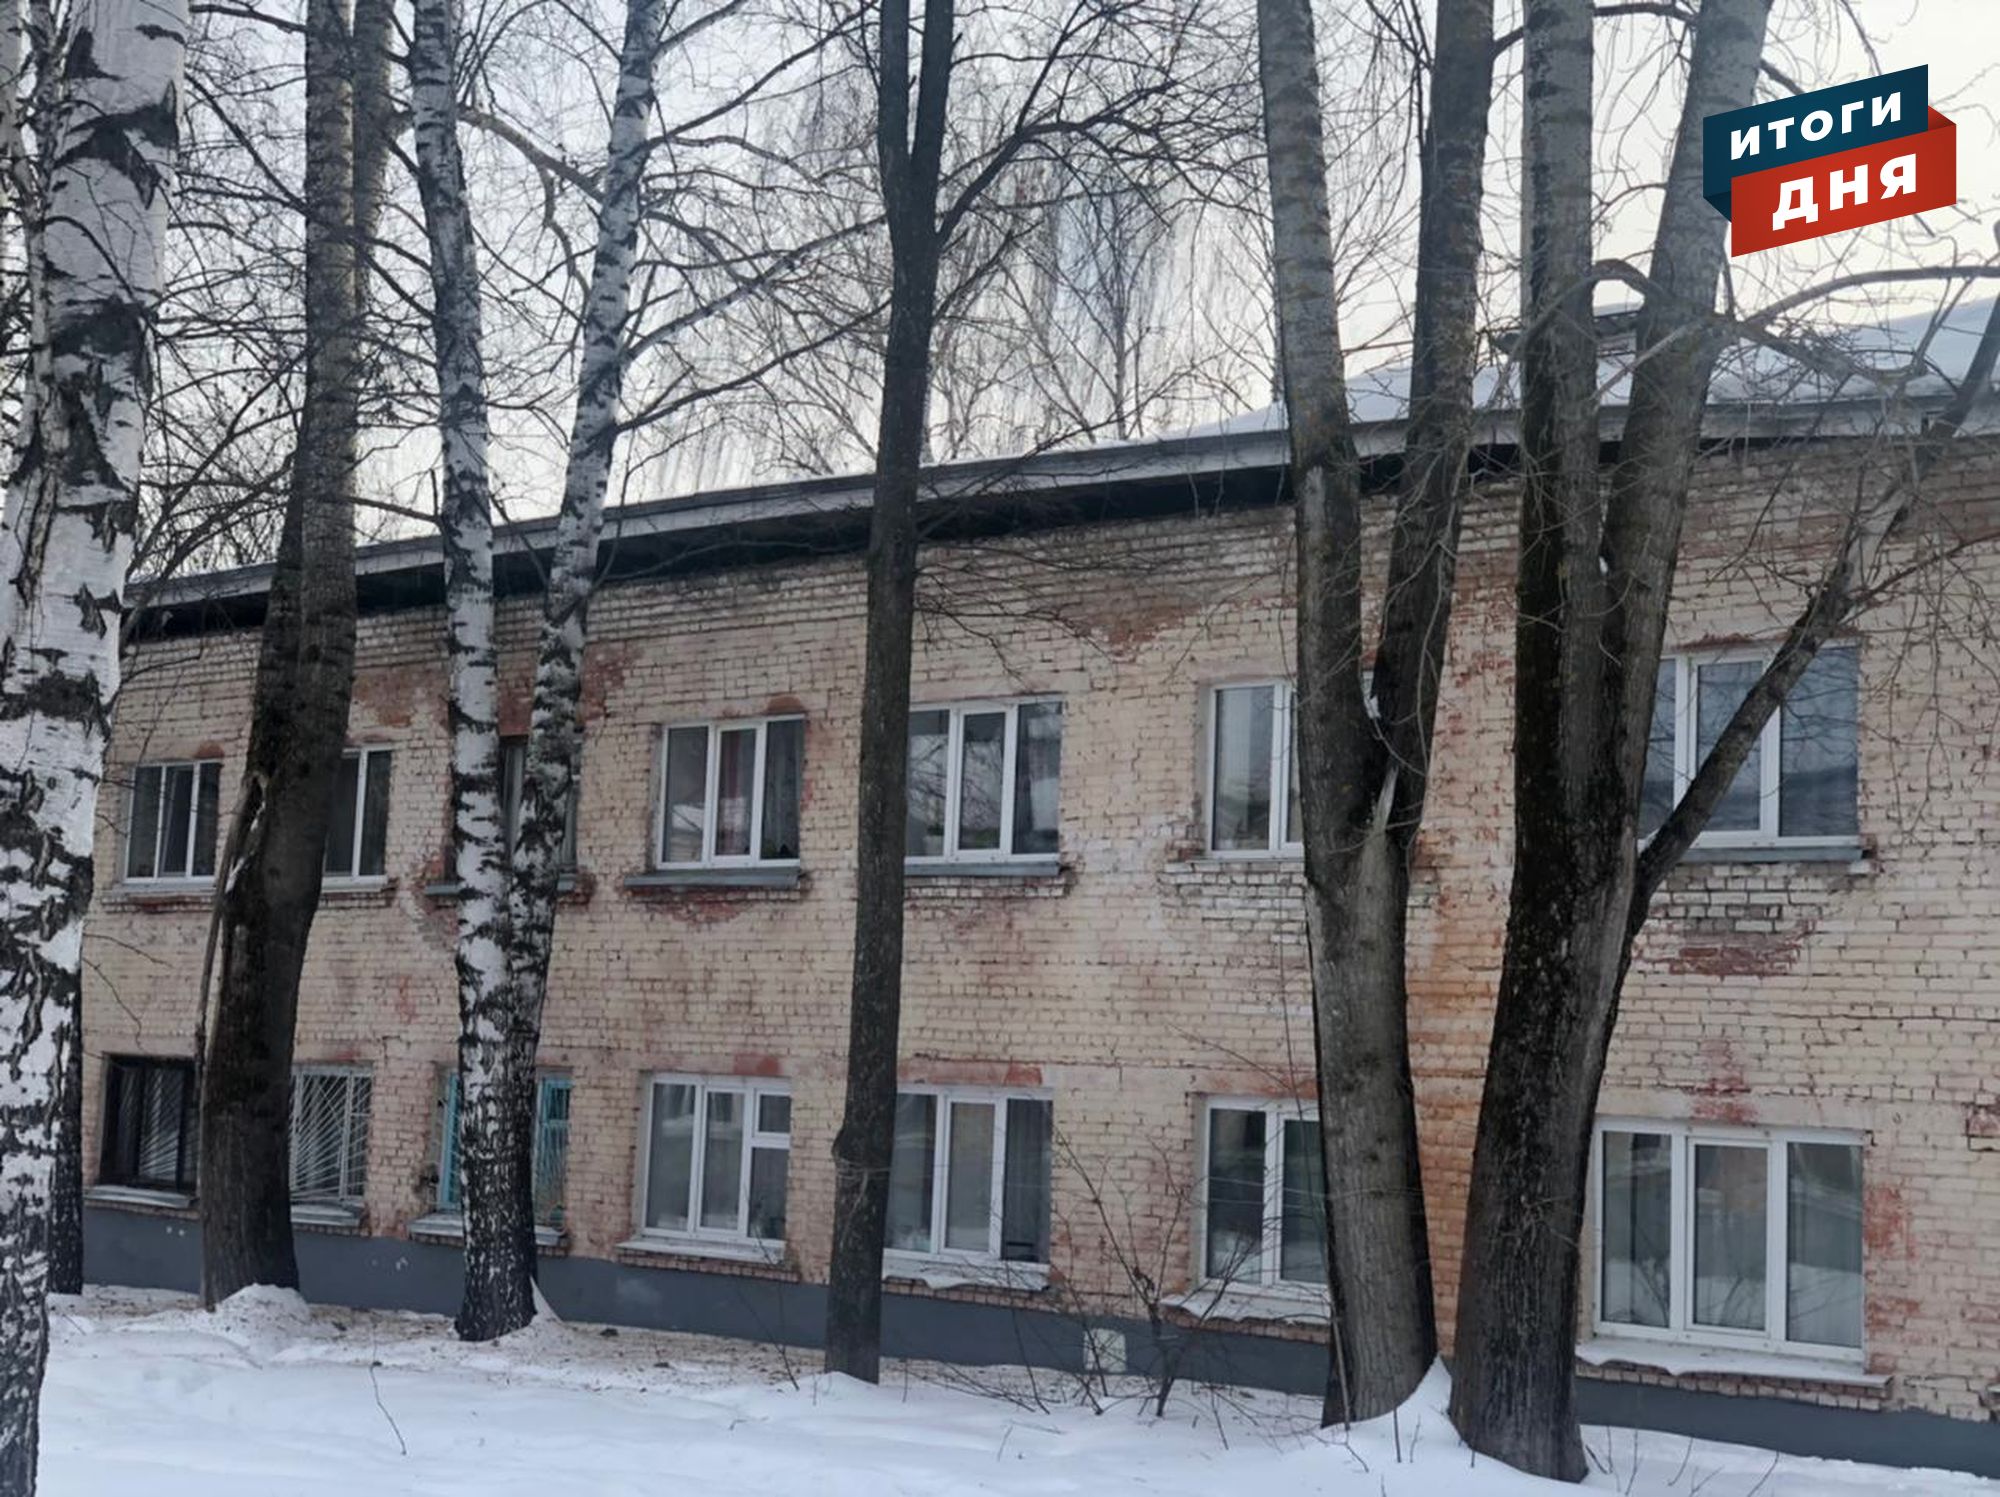 

Итоги дня: обрушение кровли дома в Ижевске и закрепление школ

